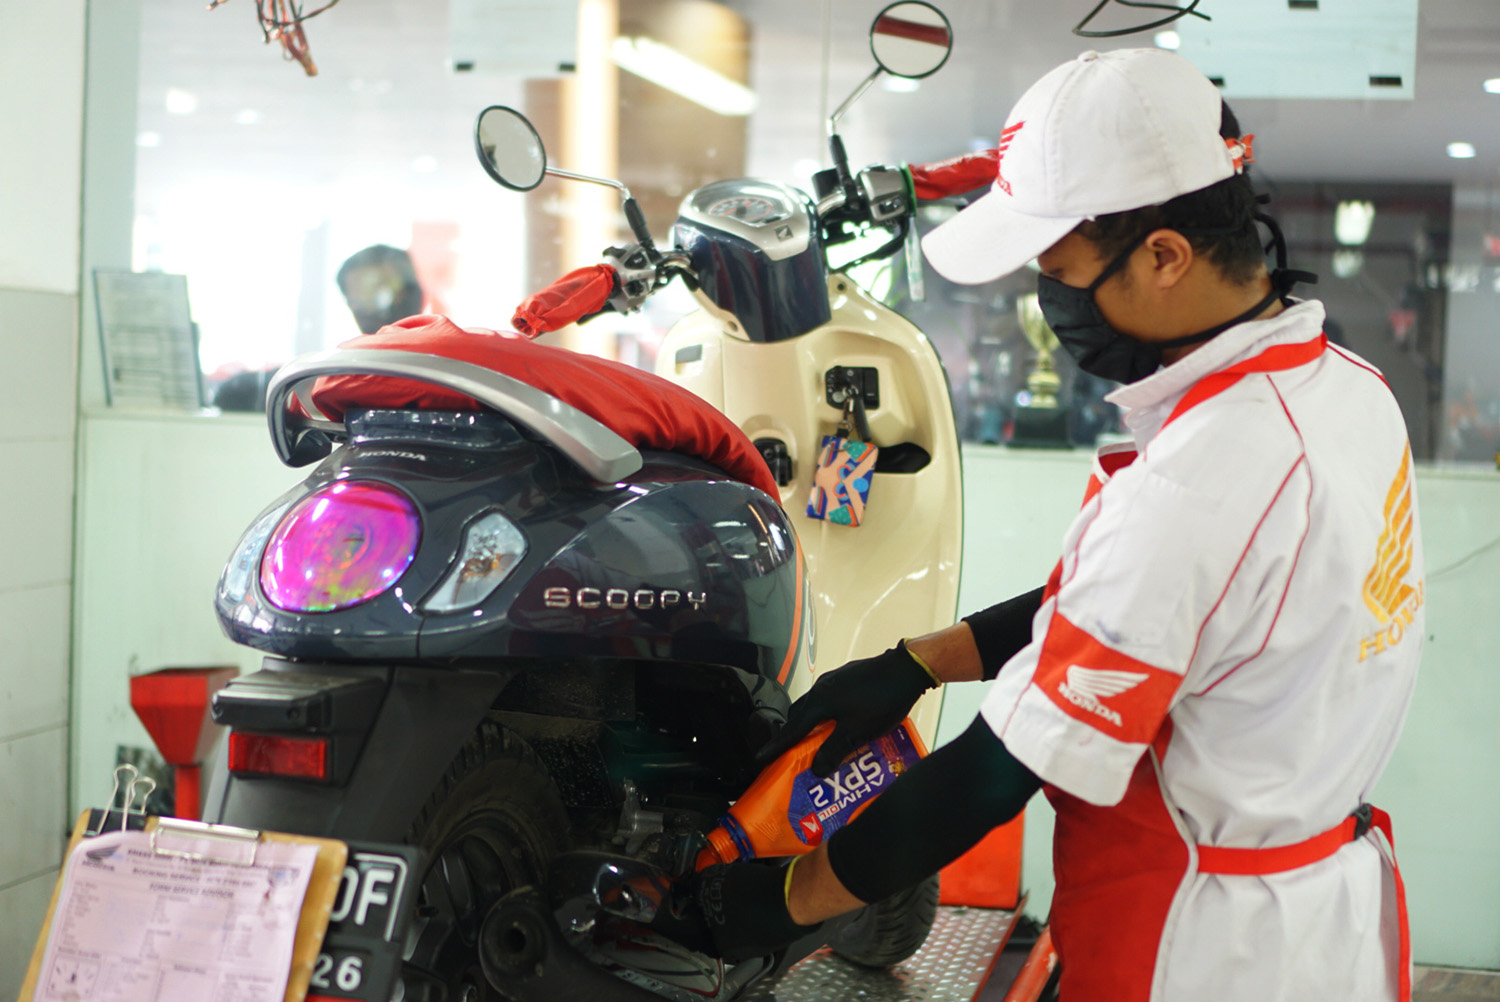 Perawatan motor Mekanik sepeda motor Honda mengganti oli mesin sepeda motor milik konsumen yang sedang servis di bengkel resmi Honda atau AHASS